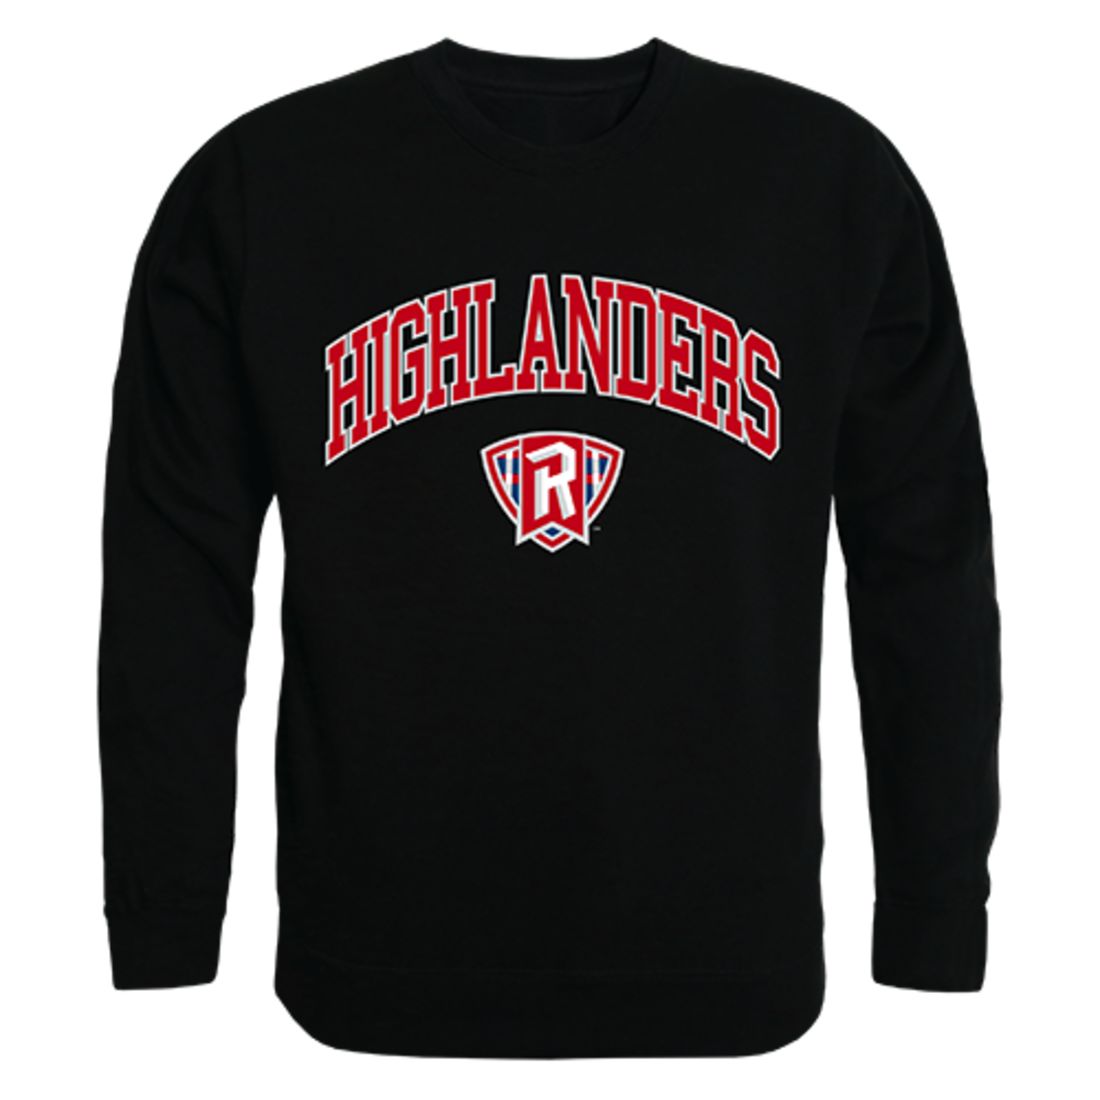 Radford University Campus Crewneck Pullover Sweatshirt Sweater Black-Campus-Wardrobe